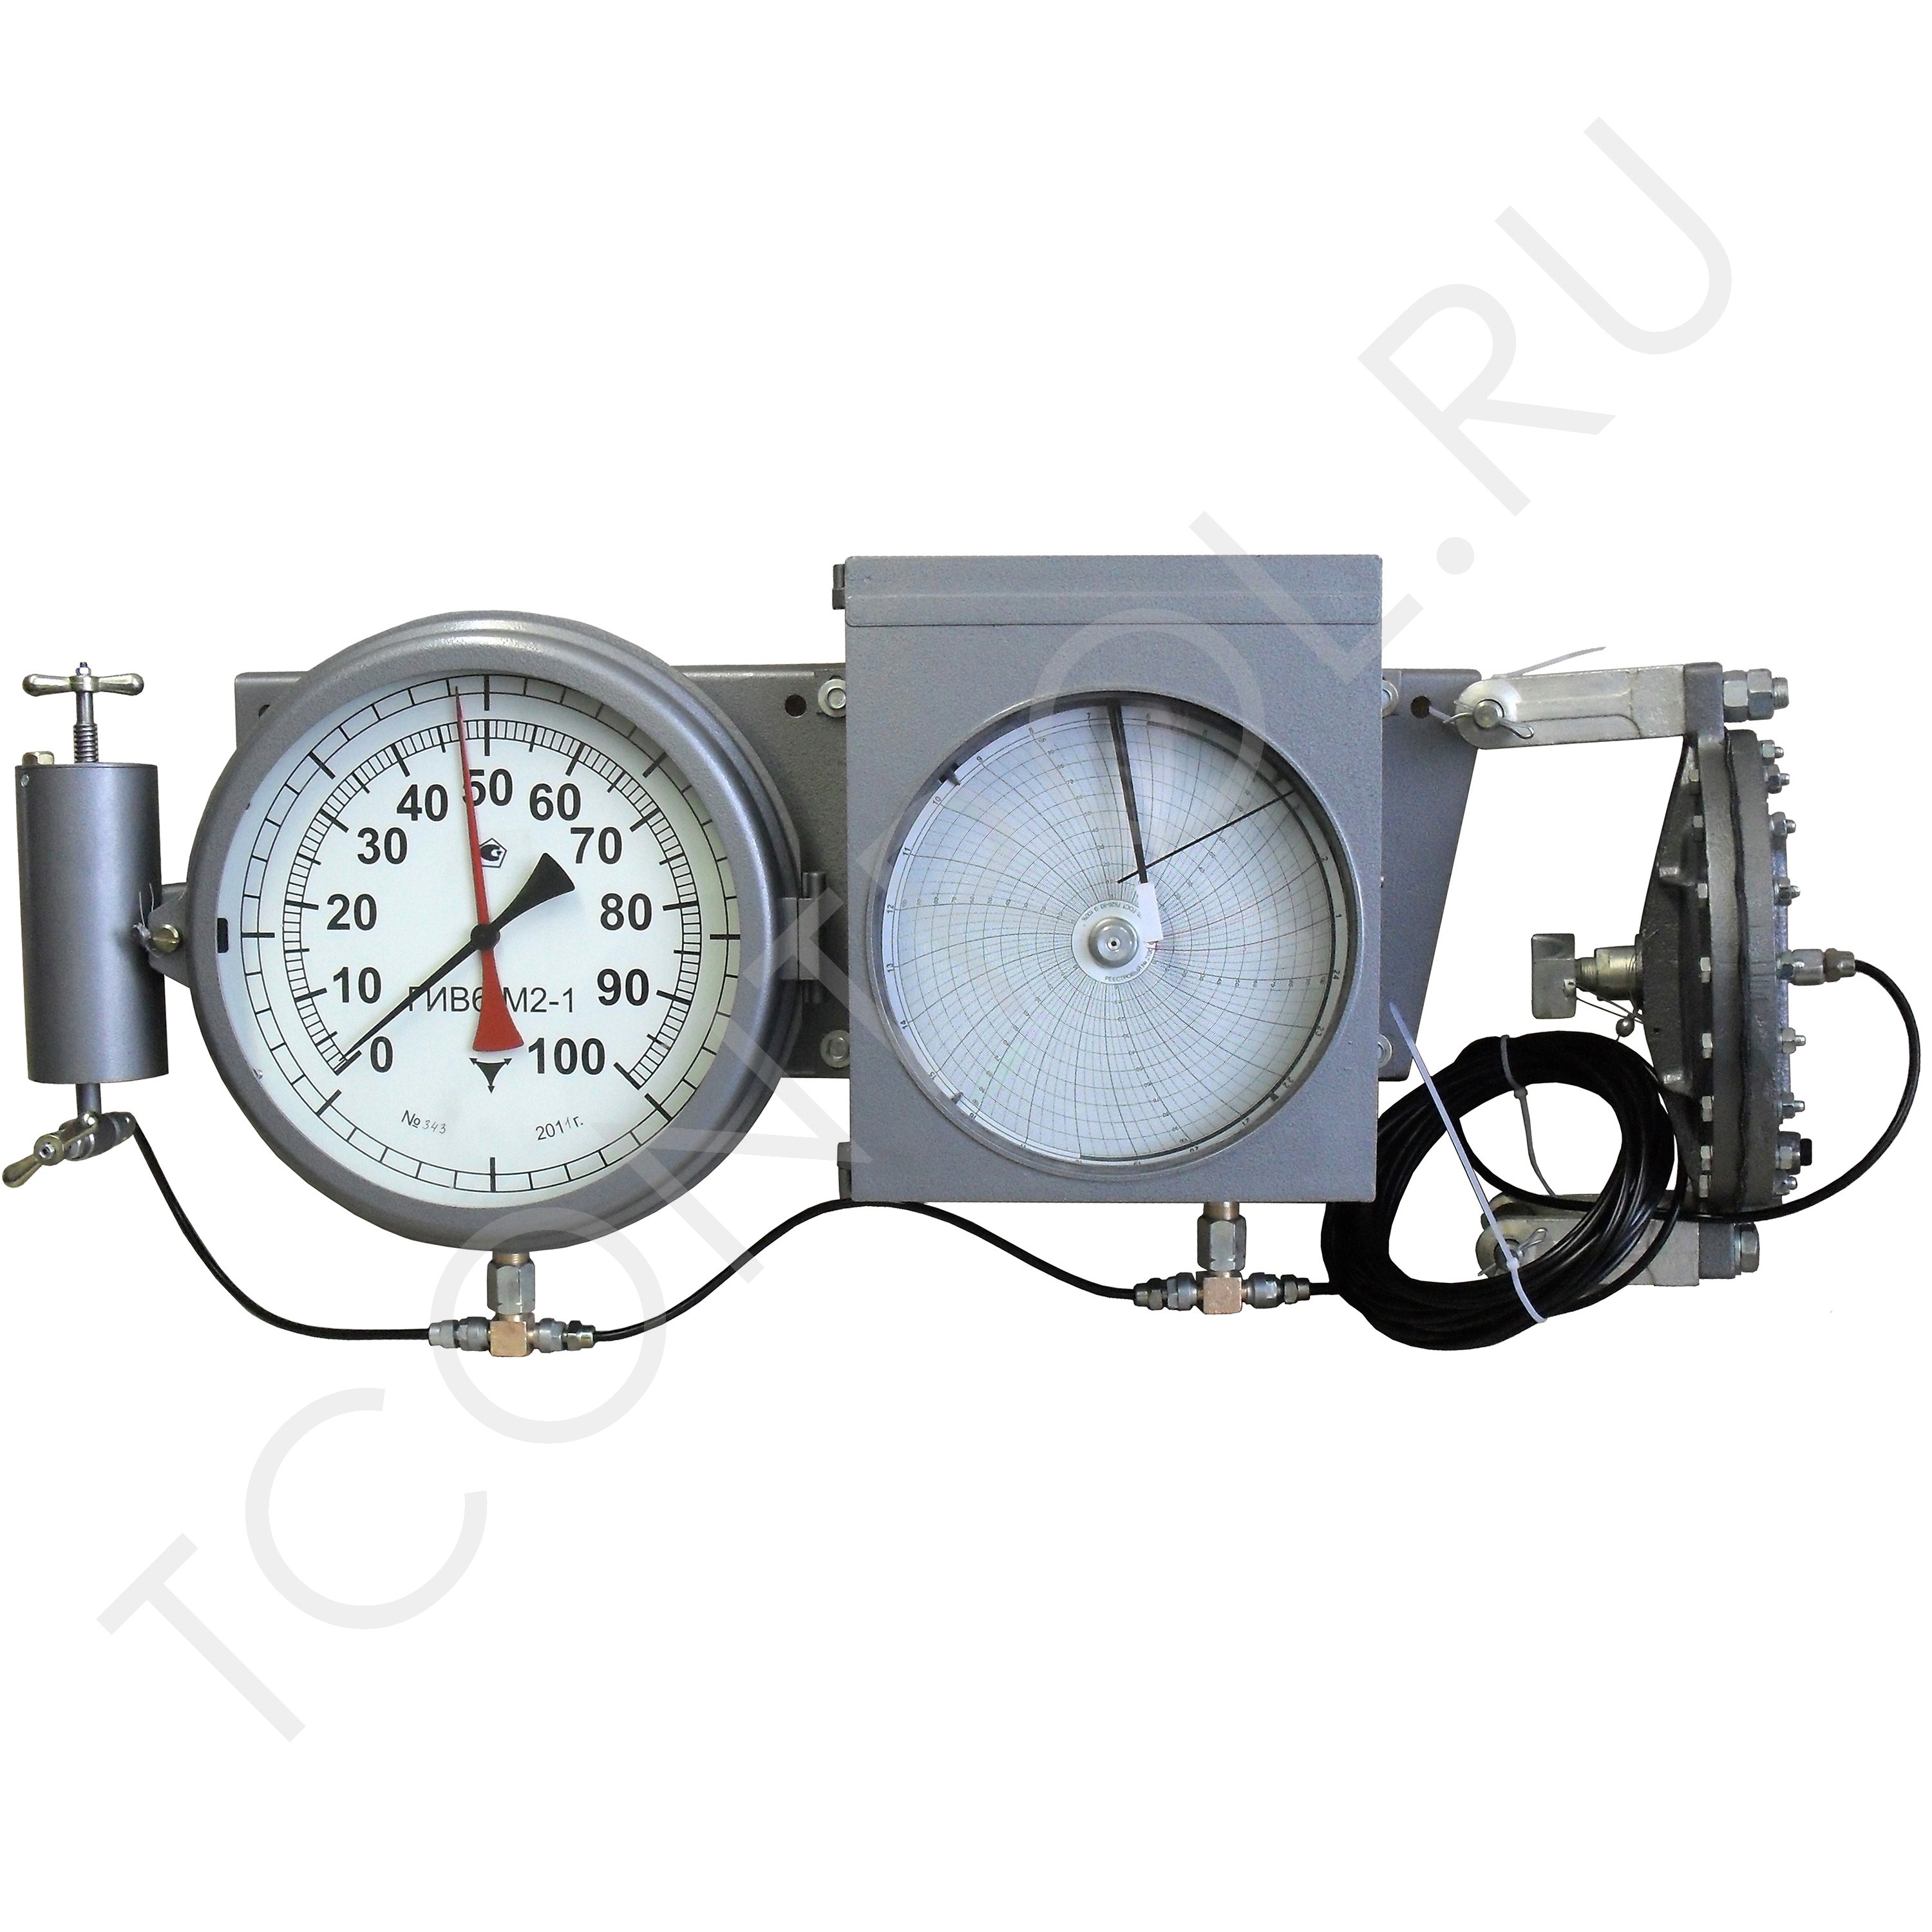 Трансформатор давления. Гидравлический индикатор веса ГИВ-6. Гидравлический индикатор веса ГИВ-6м2-1. Гидравлический индикатор веса гив6-м2-1 ТД 300. Манометр ГИВ -6.